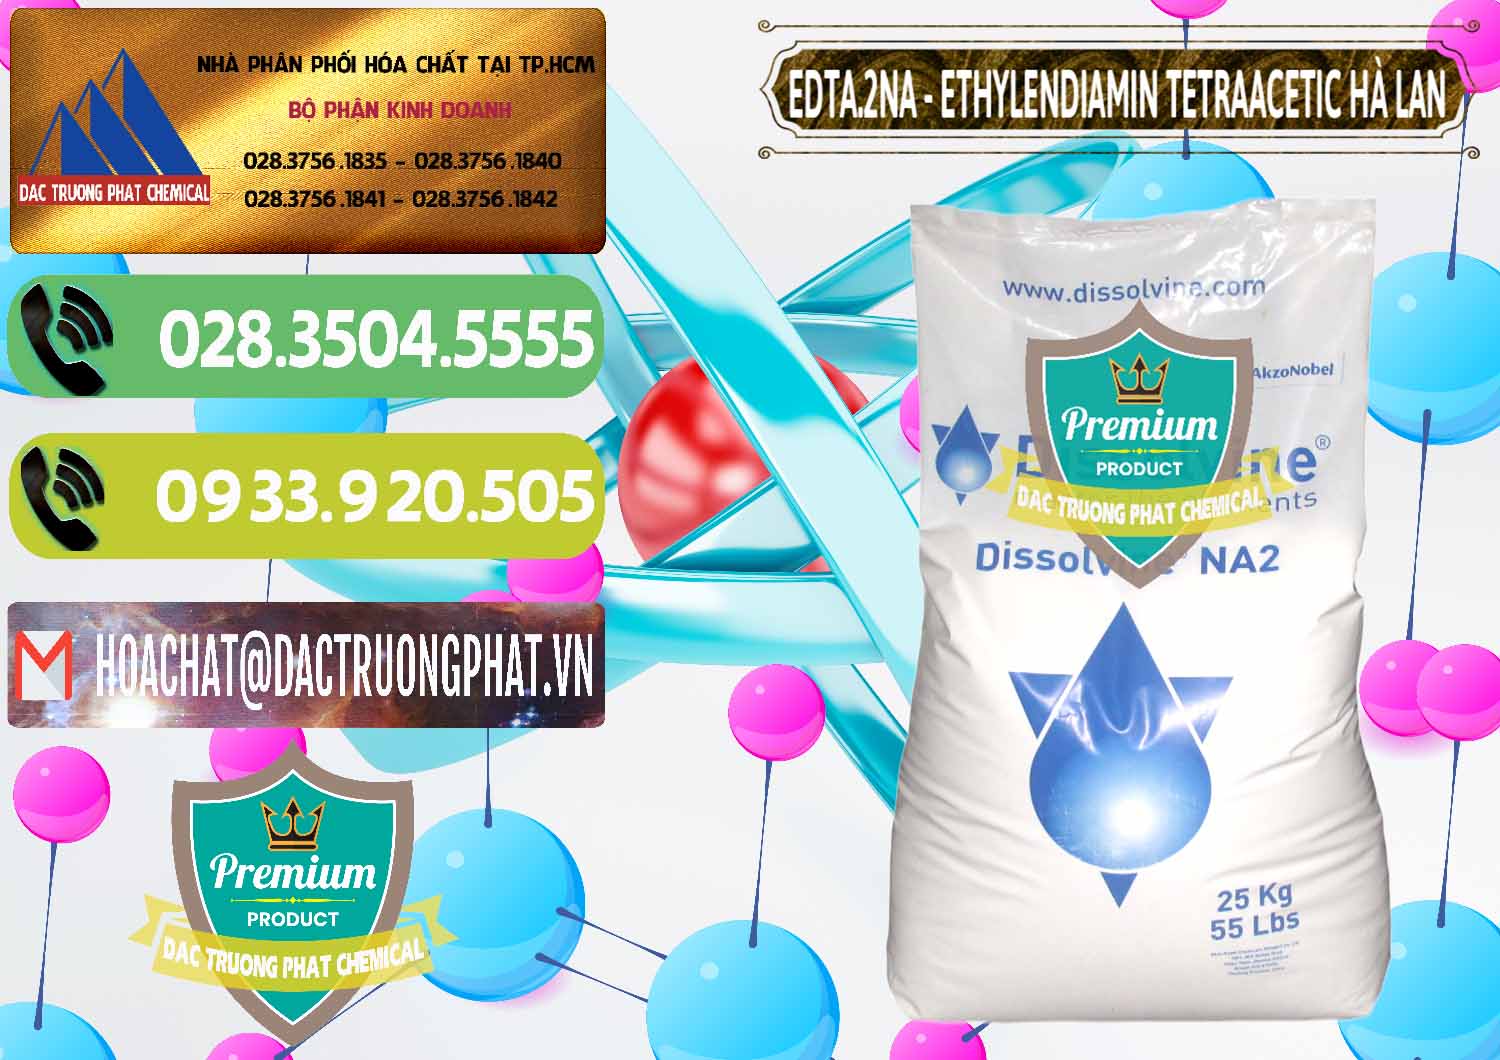 Đơn vị nhập khẩu và bán EDTA.2NA - Ethylendiamin Tetraacetic Dissolvine Hà Lan Netherlands - 0064 - Chuyên phân phối _ cung cấp hóa chất tại TP.HCM - hoachatmientay.vn